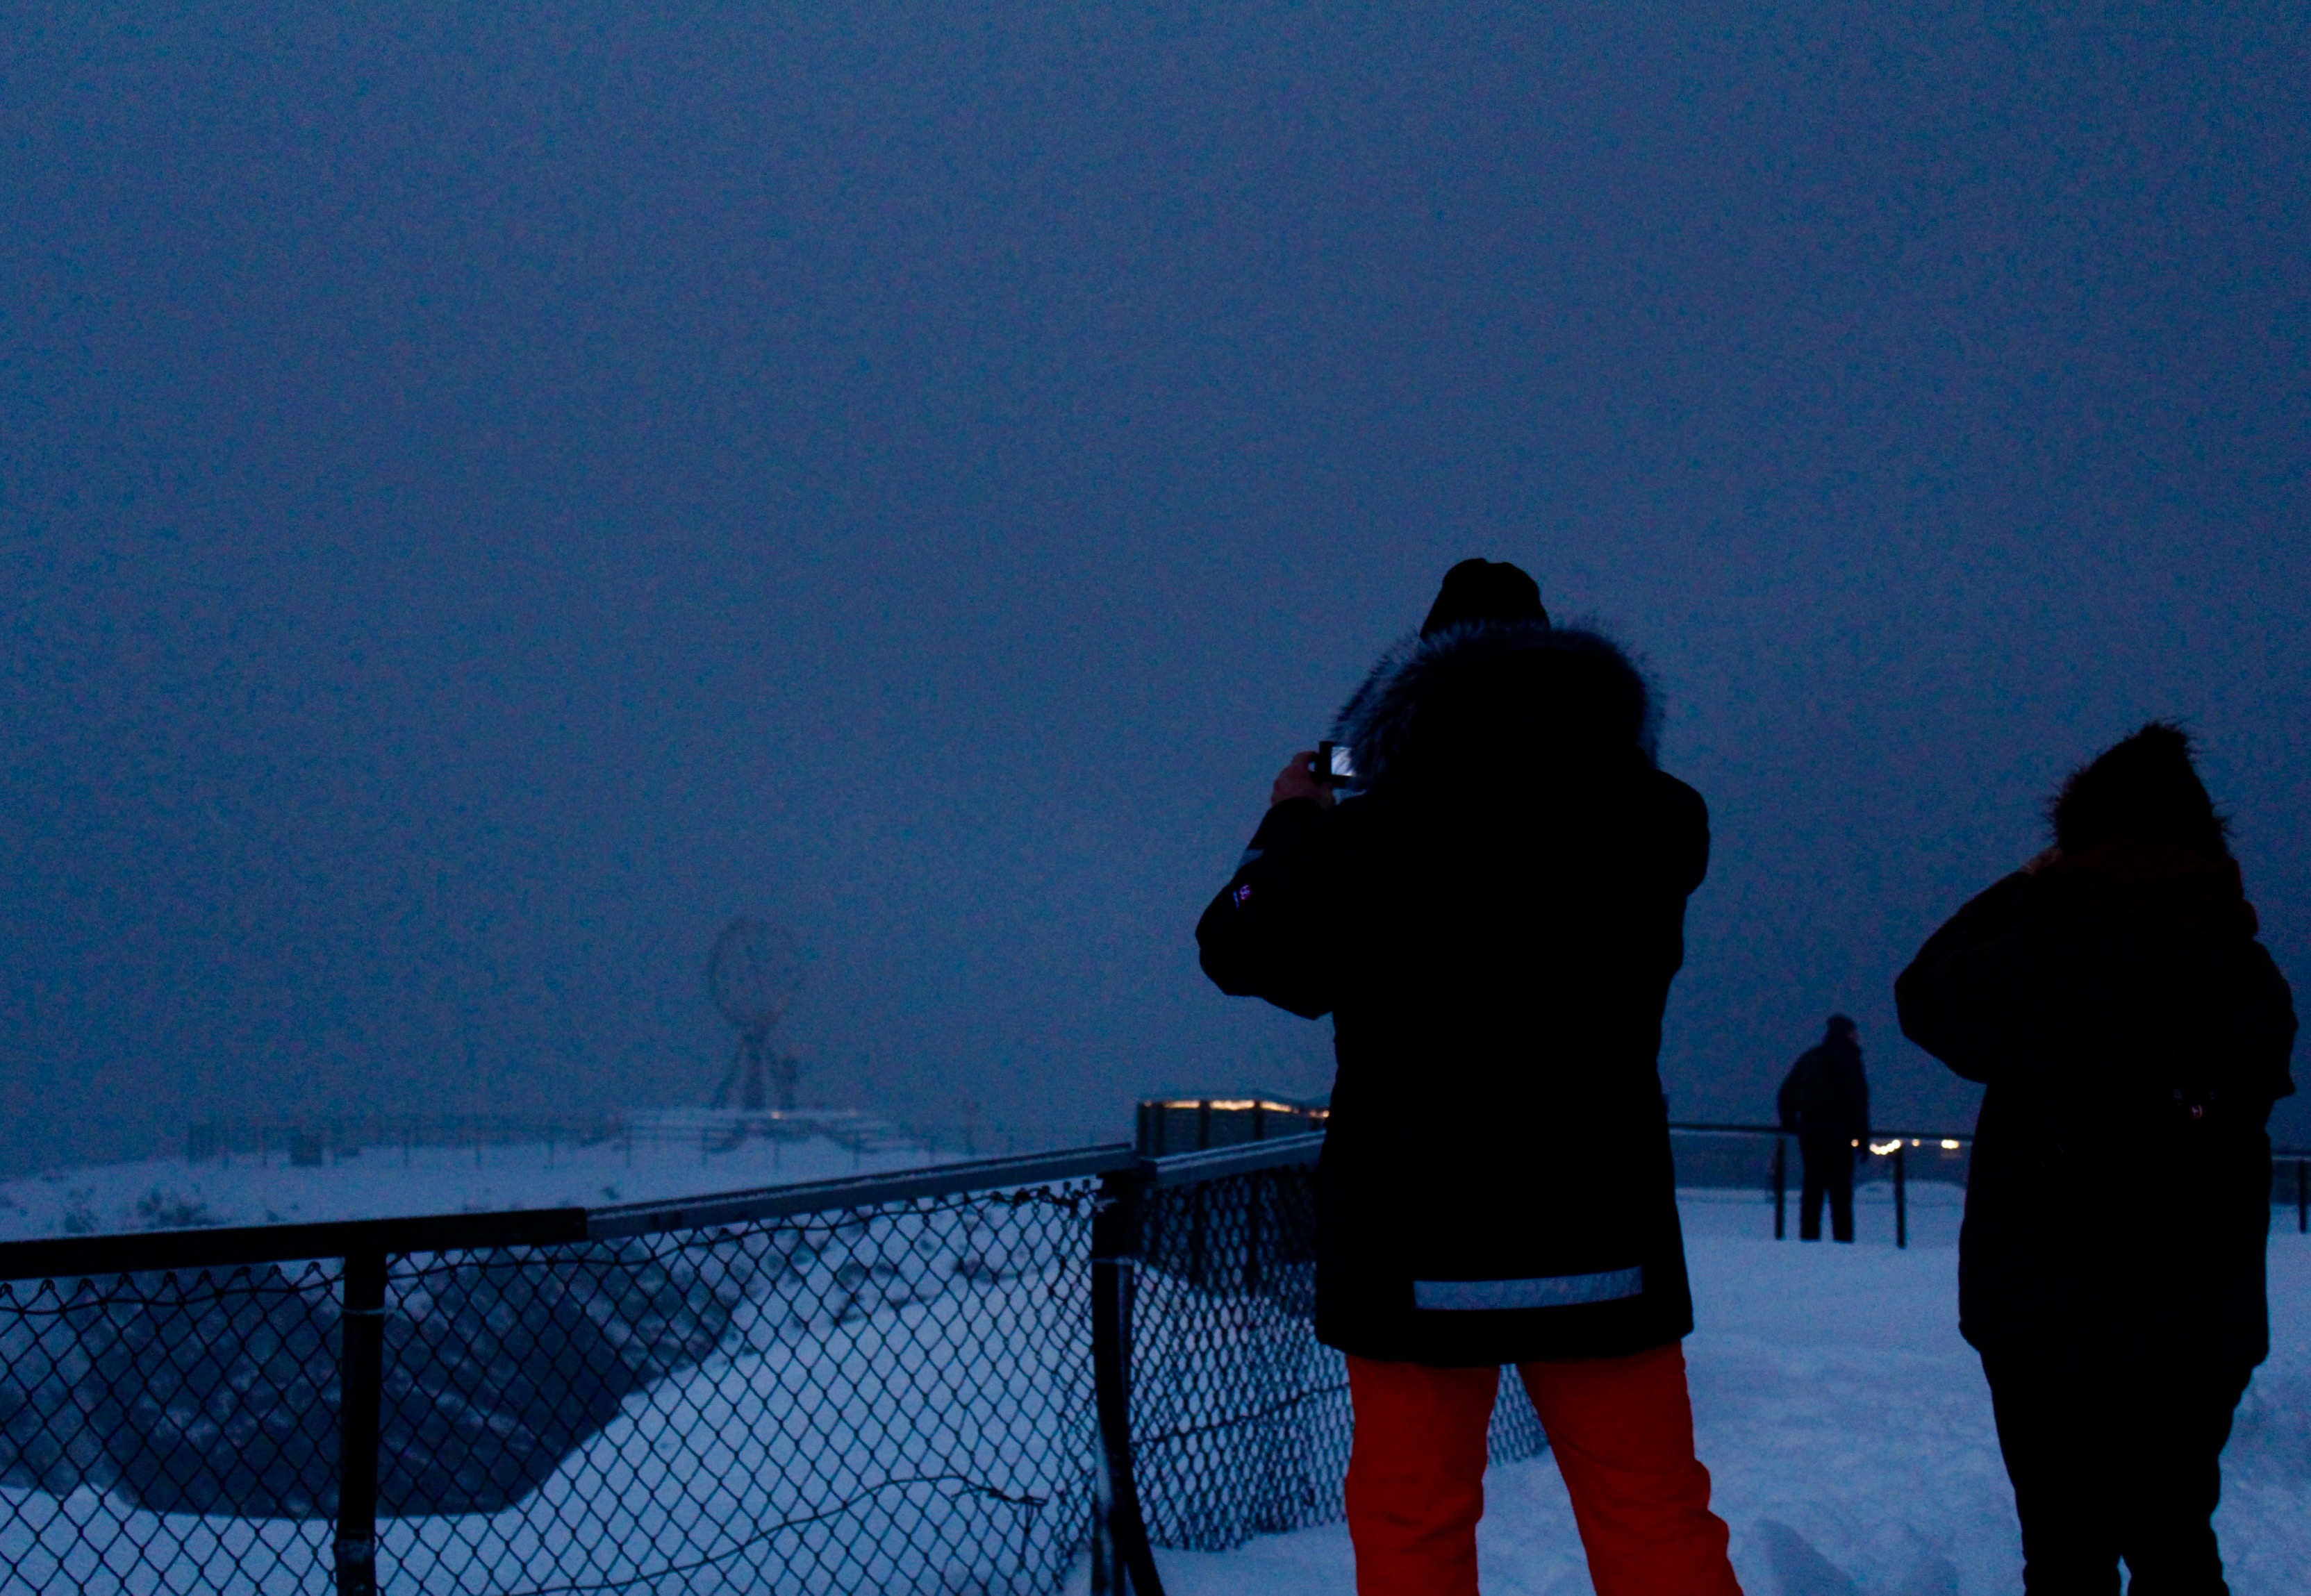 Das Wetter am Nordkap ist extrem wechselhaft und Touristen können sich glücklich schätzen, wenn der Blick auf den Globus nicht durch dicke Nebelschwaden verdeckt ist.